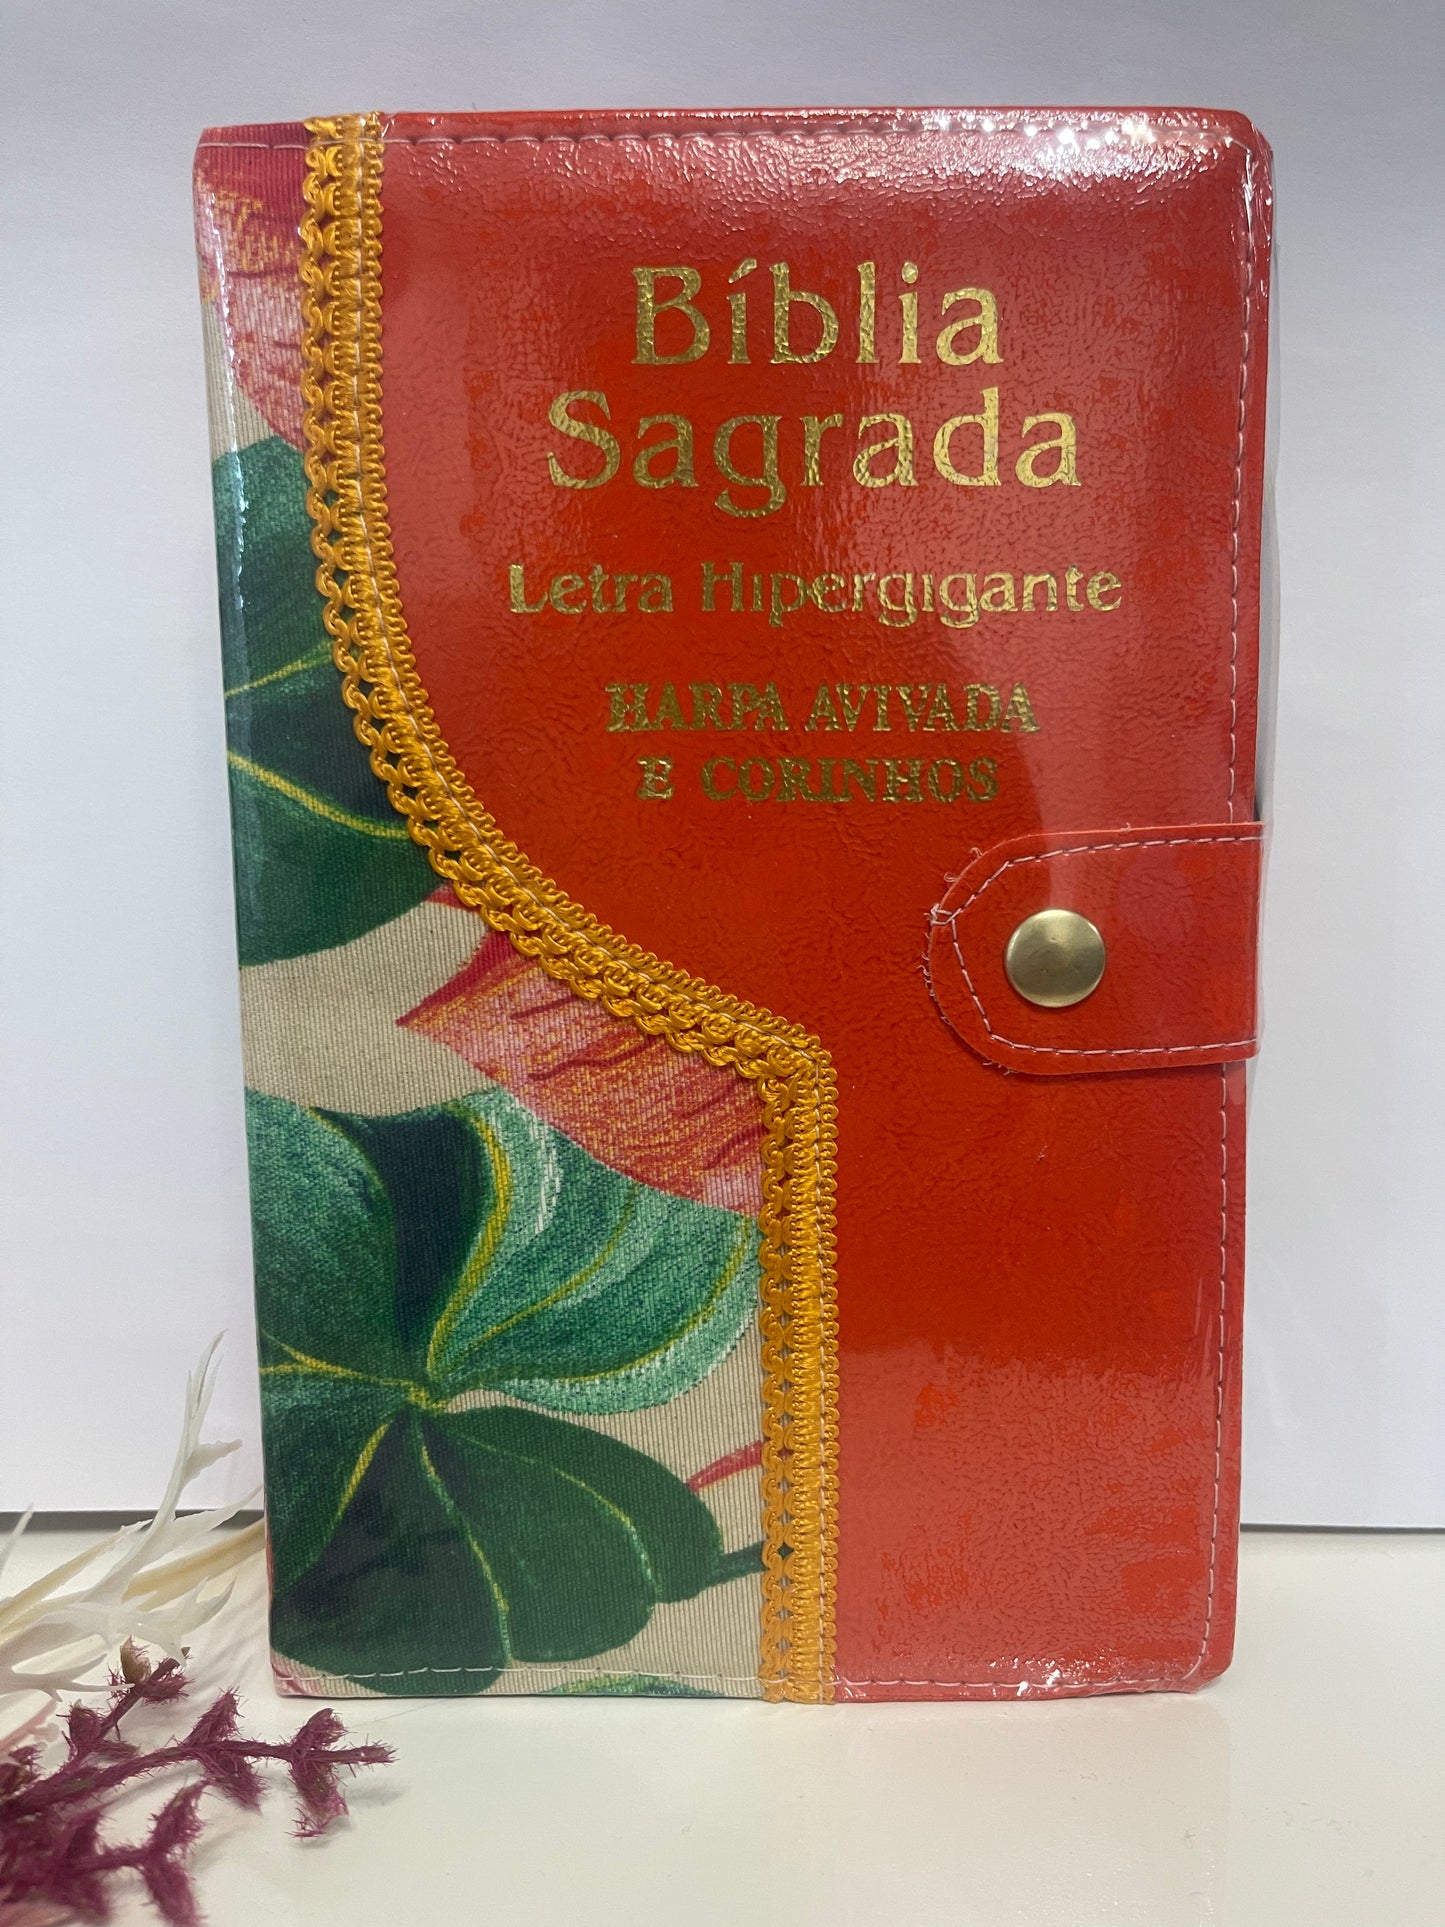 Bíblia Sagrada RC Letra hipergigante Com Harpa avivada e corinhos ziper e caneta .laranja